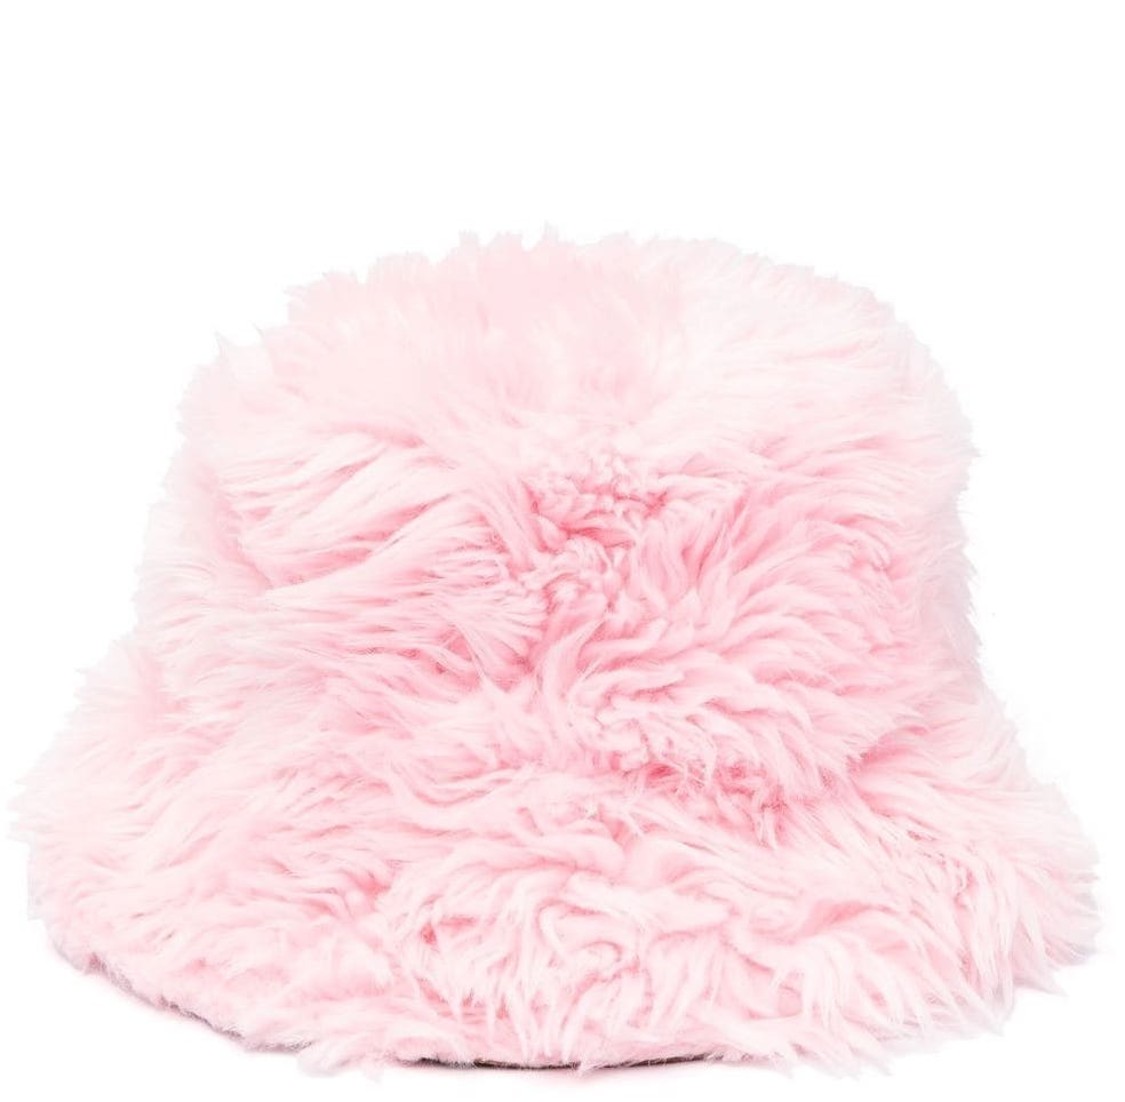 shop MSGM Saldi Accessori: Accessori MSGM, cappello, in finta pelliccia rosa, modello bucket.

Composizione: 100% poliestere.
Fodera: 100% cotone. number 2532